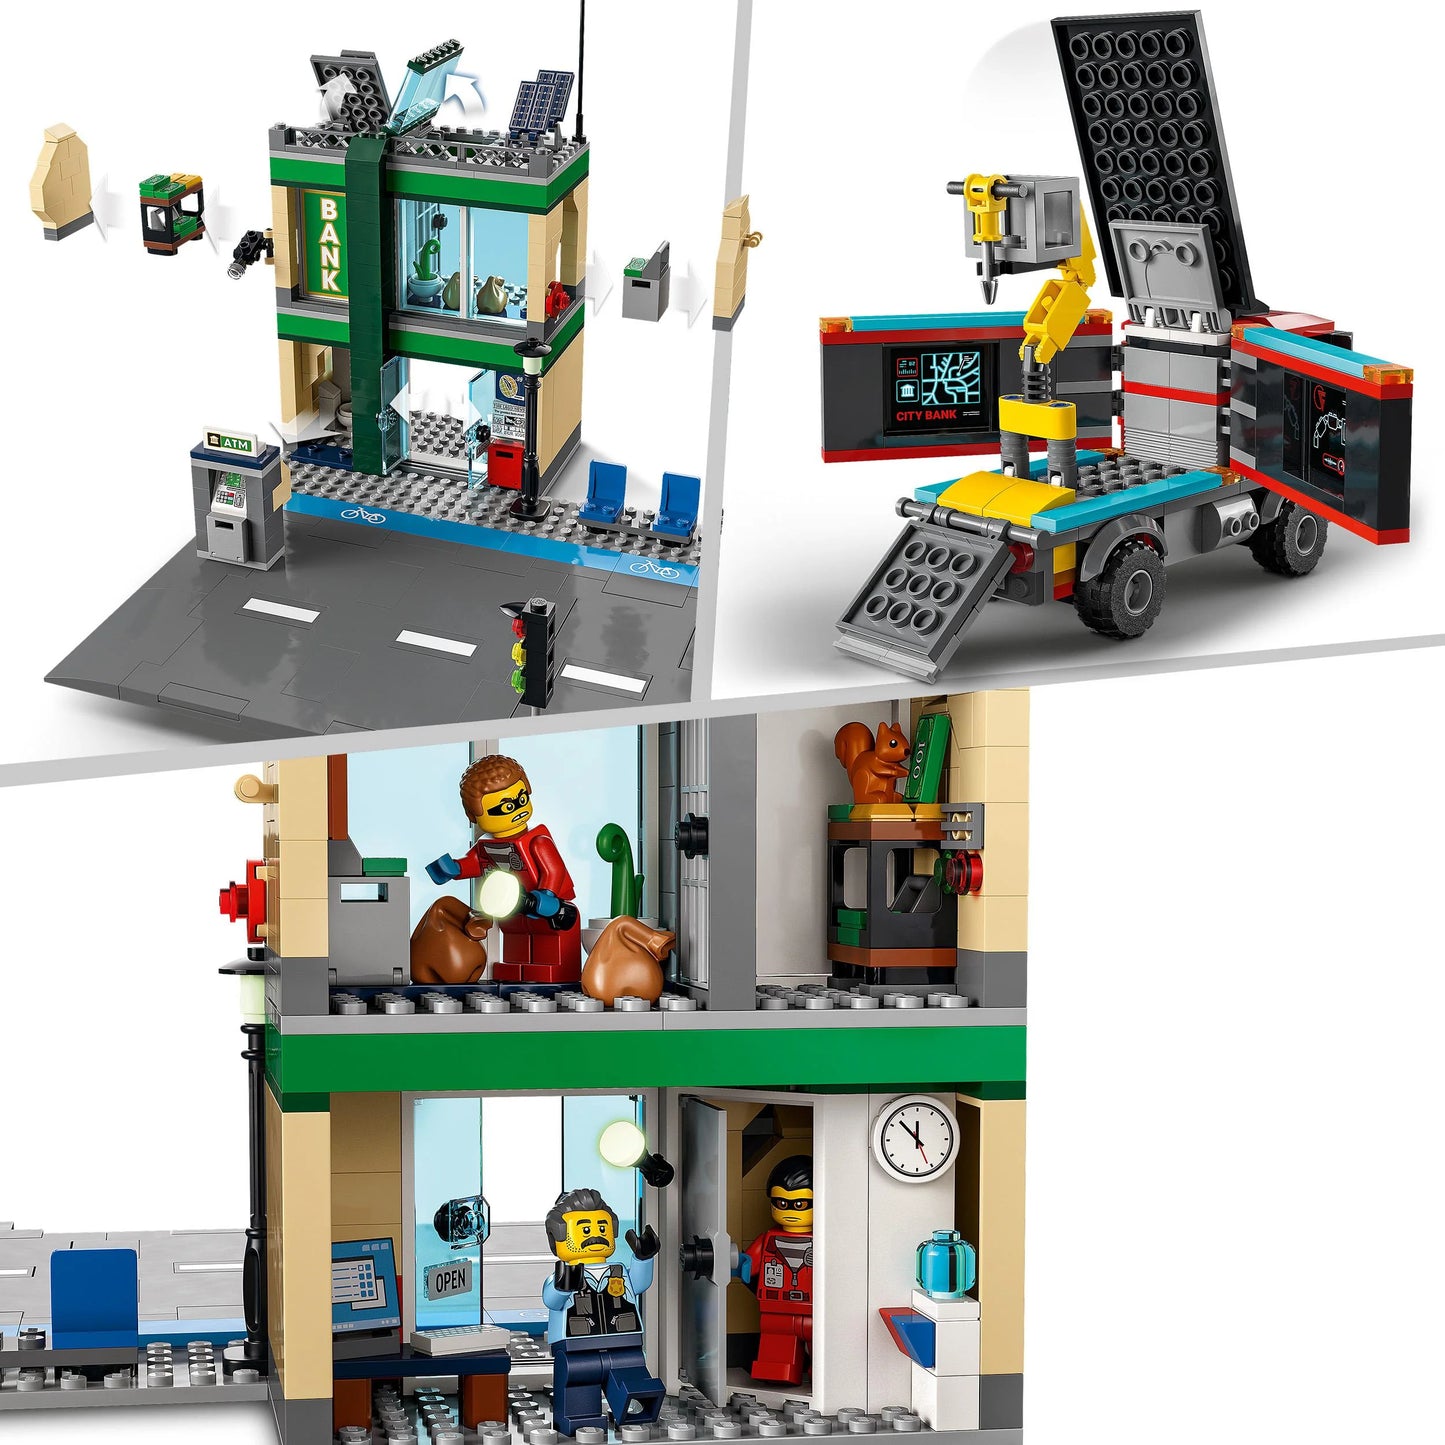 Politieachtervolging bij de bank-LEGO City